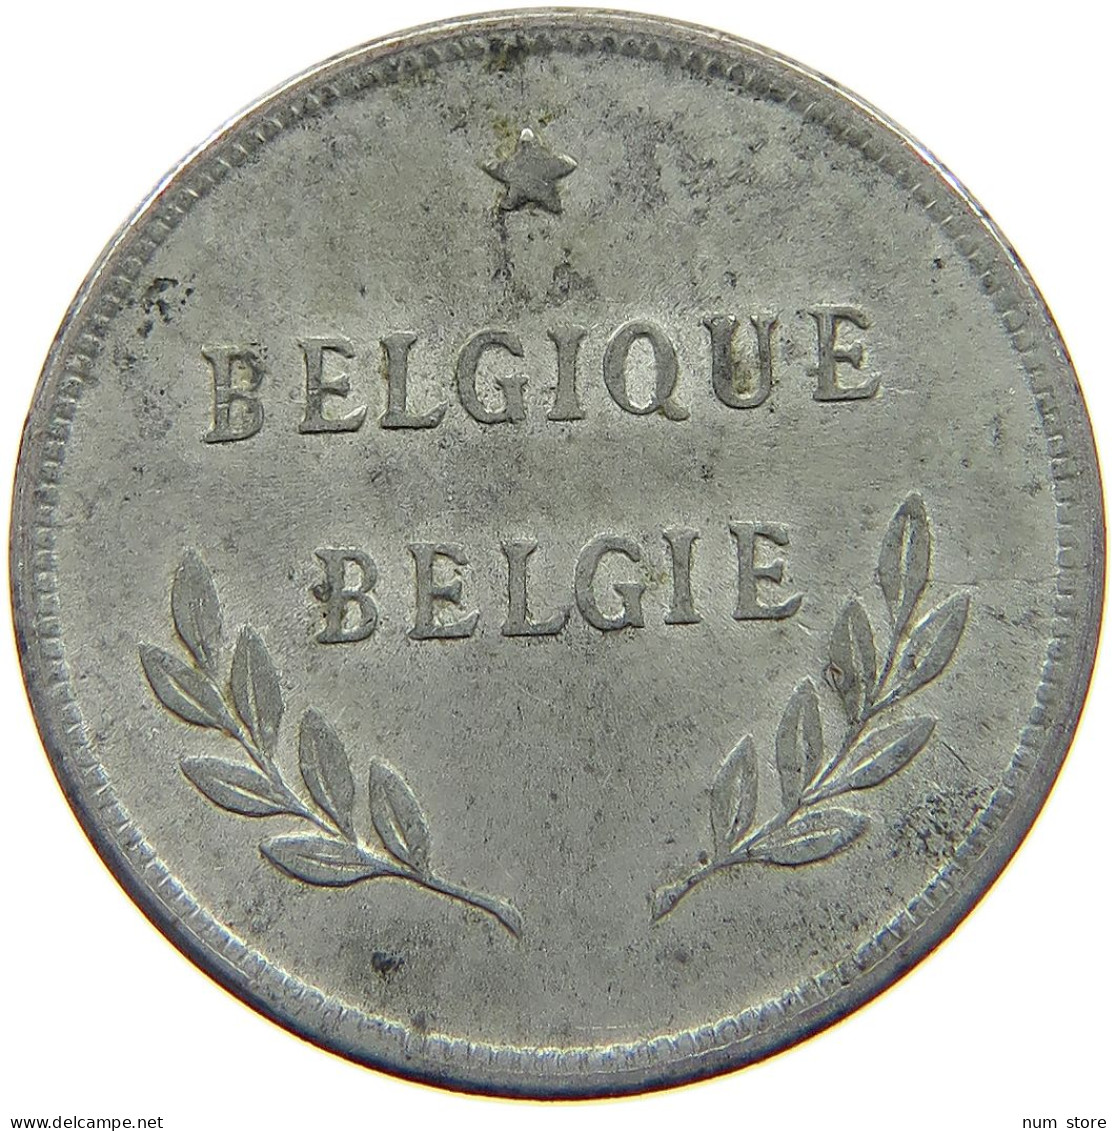 BELGIUM 2 FRANCS 1944 #c007 0279 - 2 Frank (1944 Befreiung)